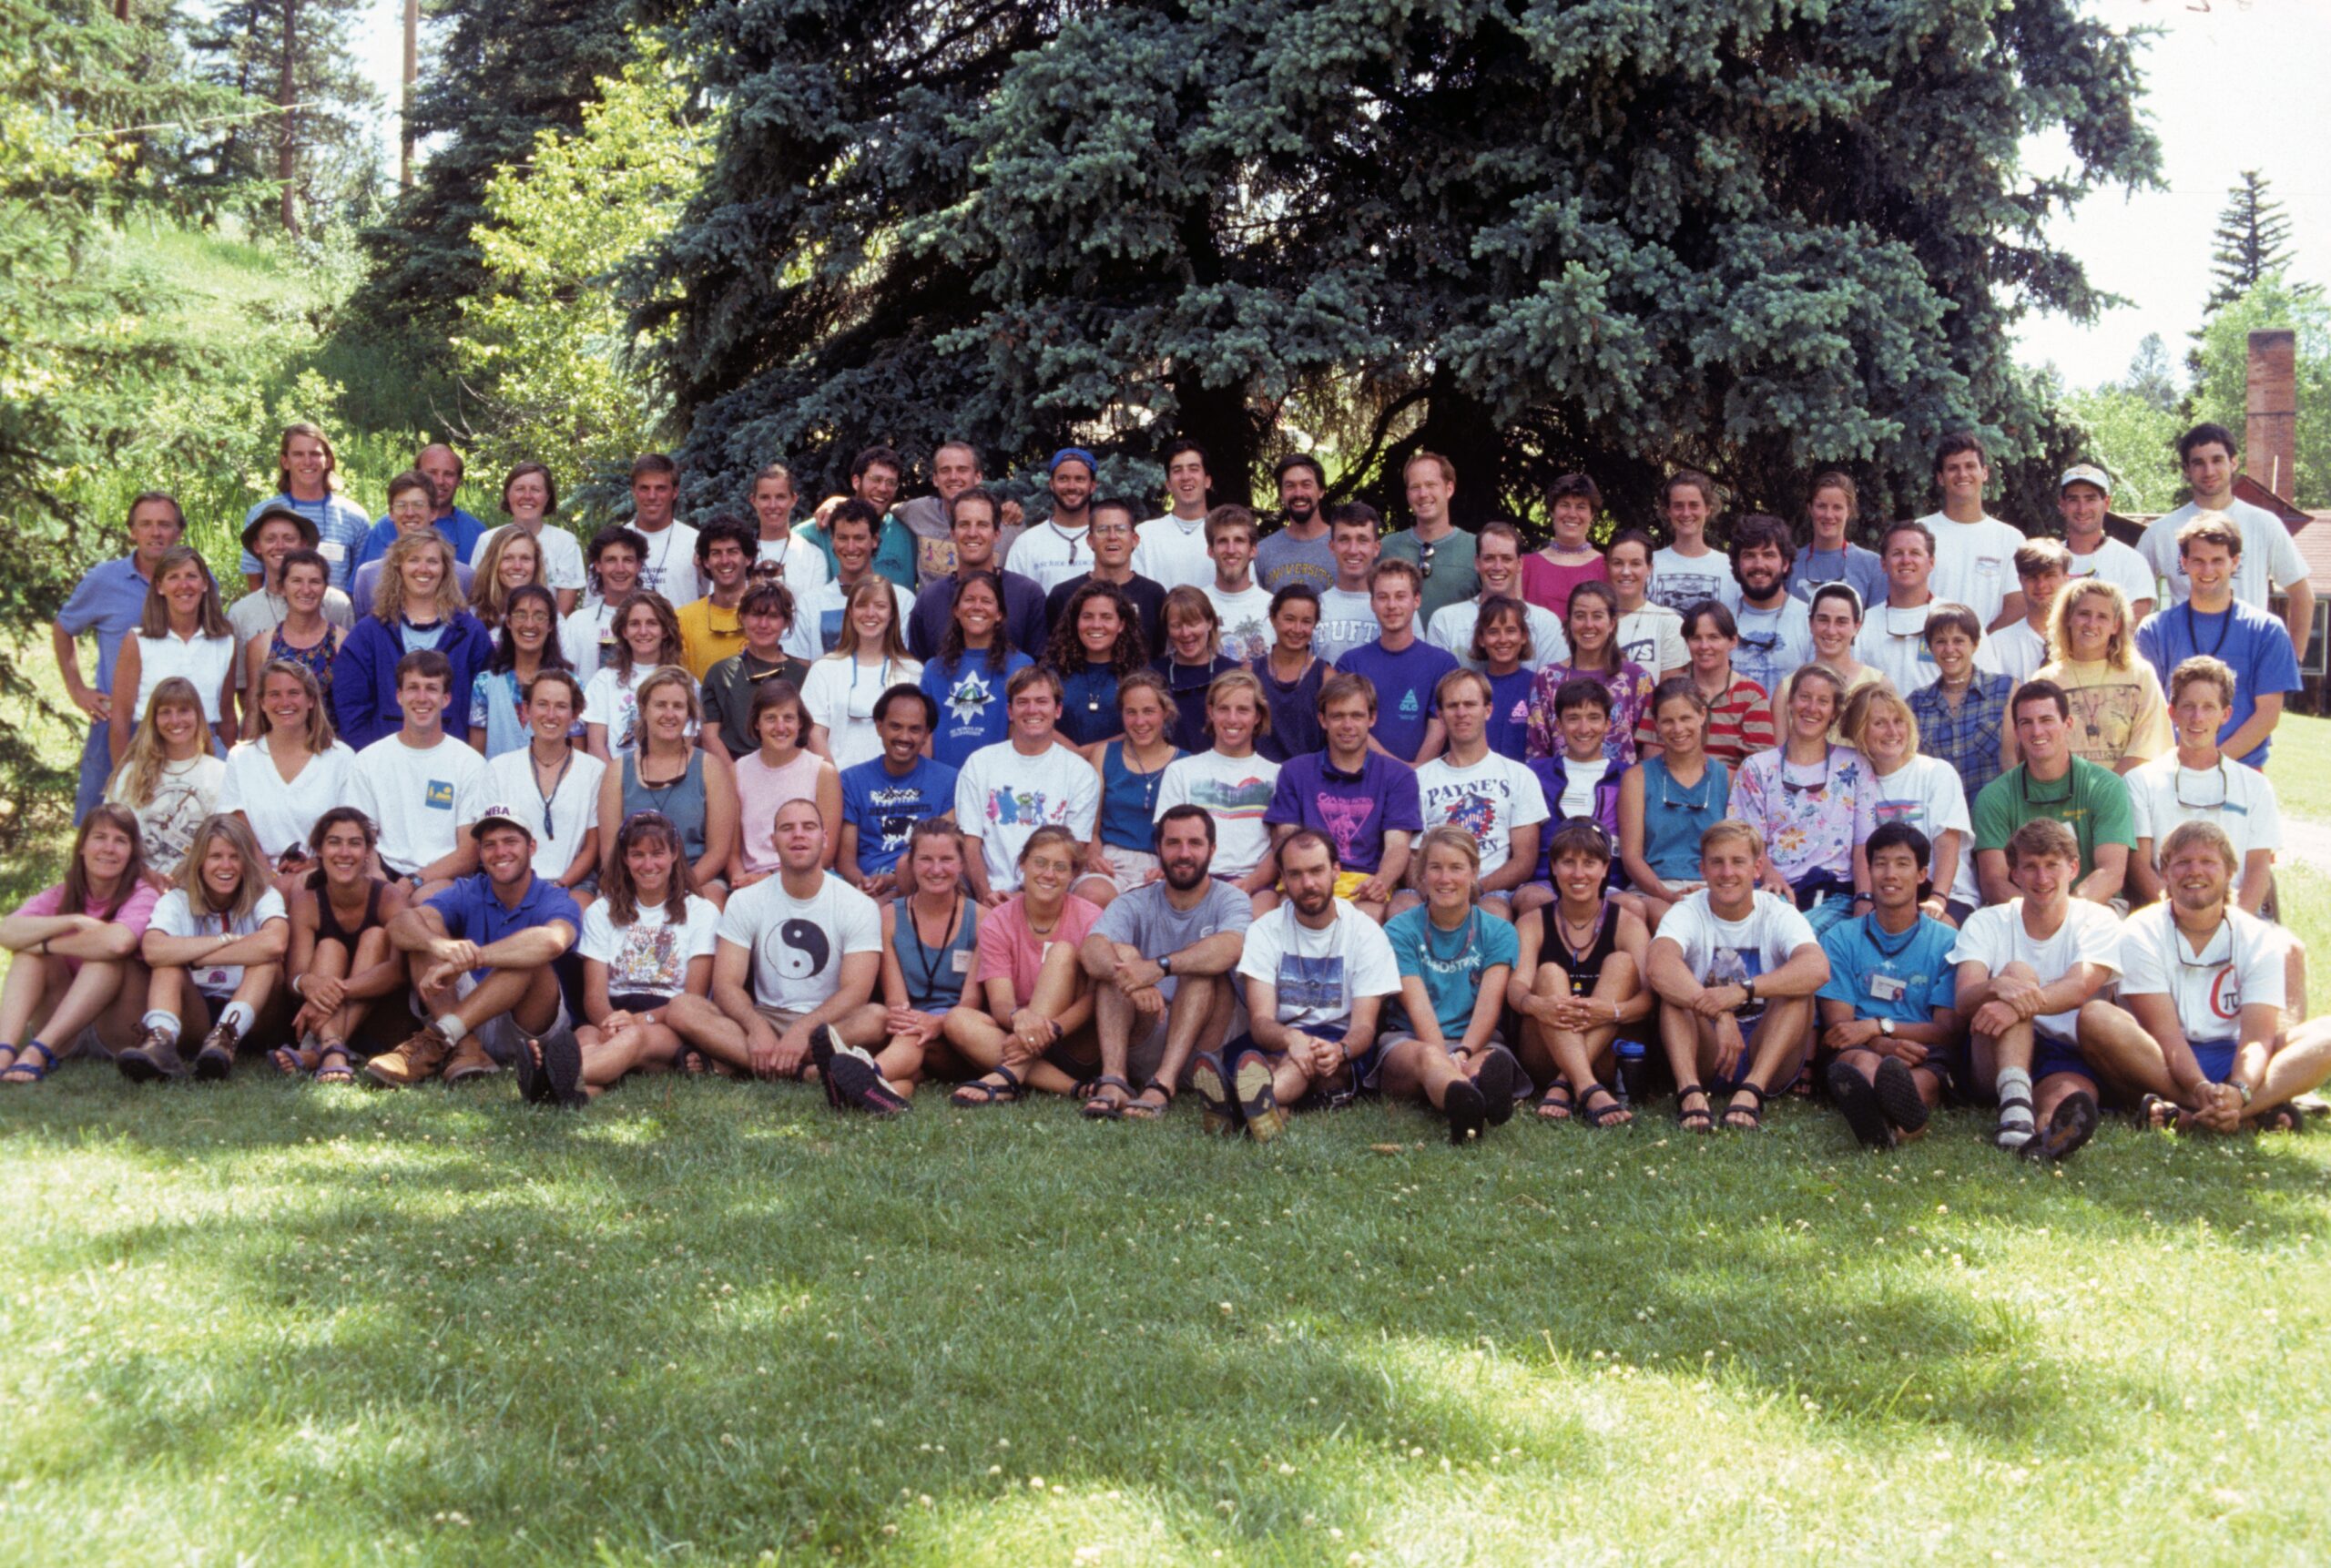 1996 Staff